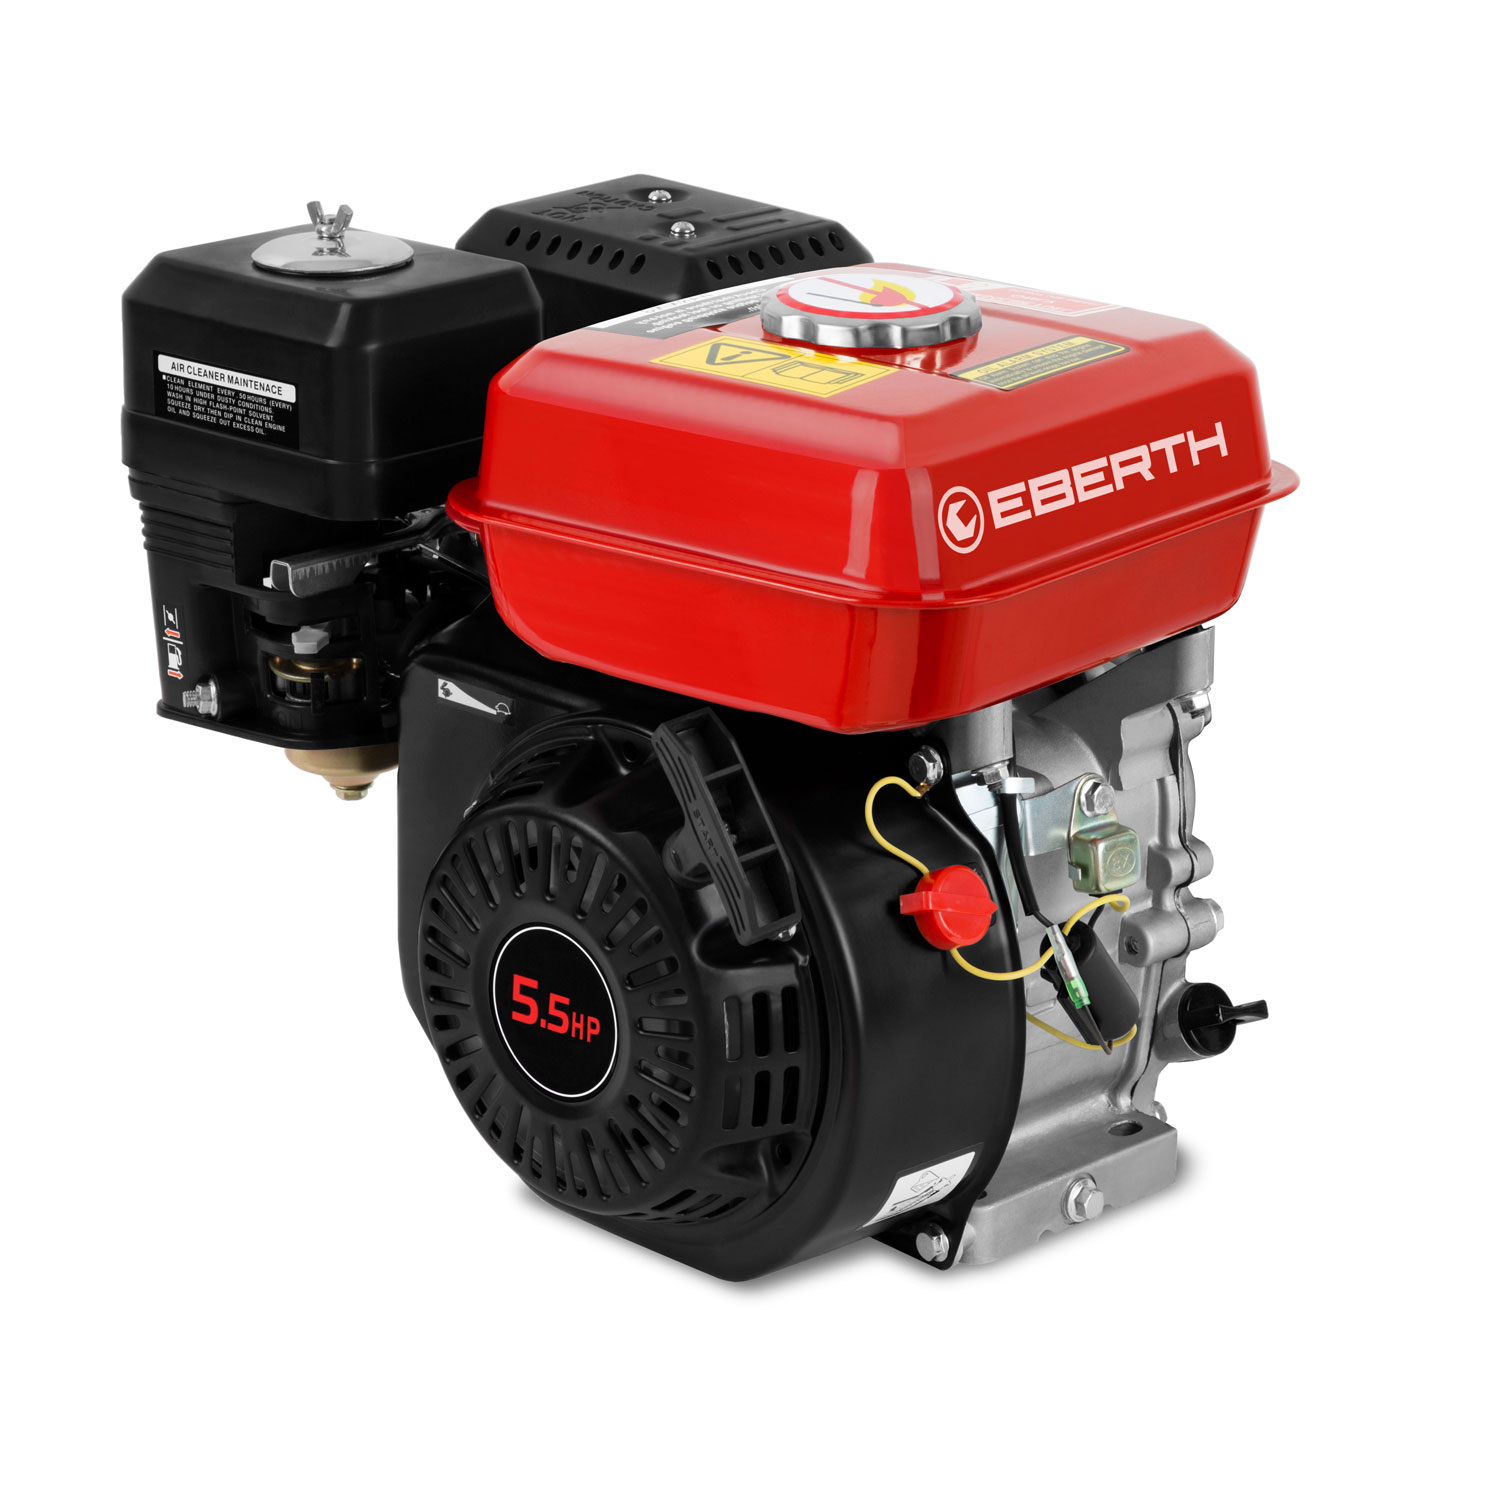 EBERTH EBERTH 6,5CV 4,8 kW moteur à essence thermique 4 temps 1 cylindre onde 20 mm 